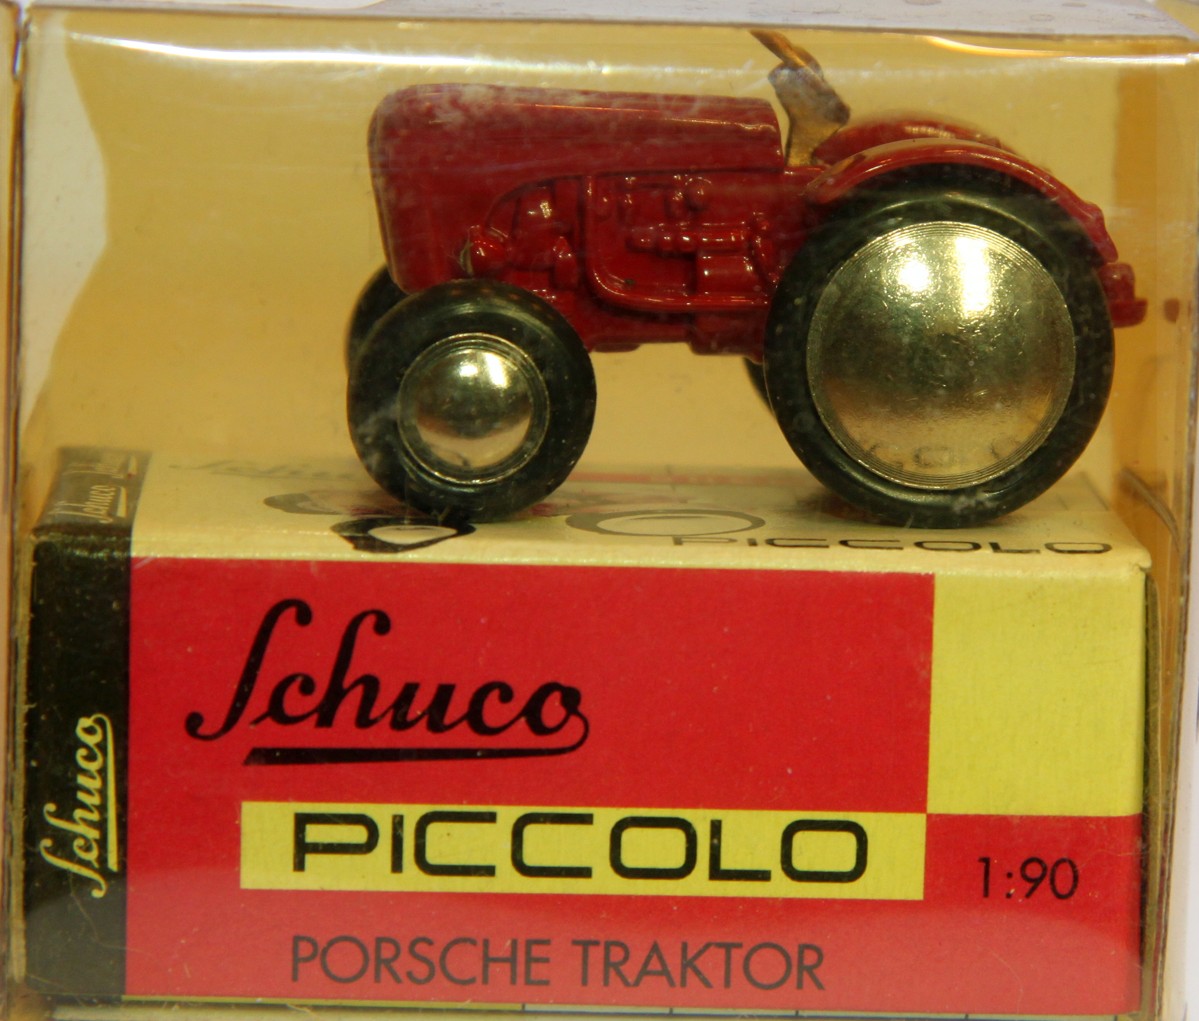 Schuco 01541 Piccolo Porsche Traktor, rot, im Original Karton